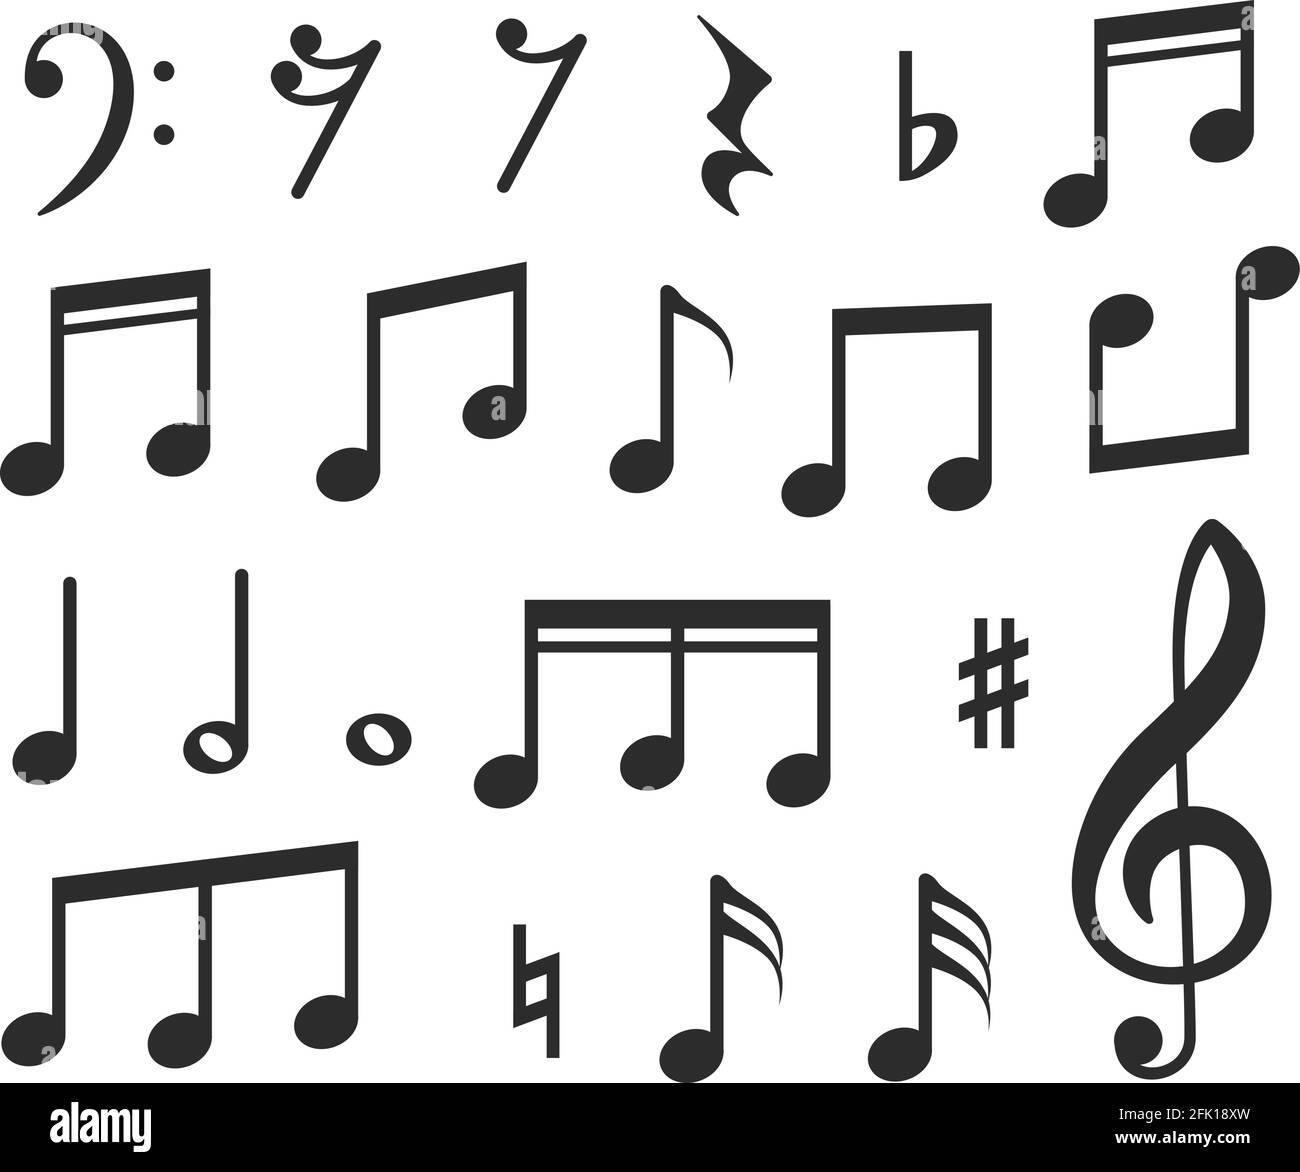 Musiknoten. Symbole für schwarze Noten mit musikalischer Melodie. Moderne grafische Elemente für Musicals, Instrumentalpartituren oder Lieder. Isolierte Vektorsymbole Stock Vektor